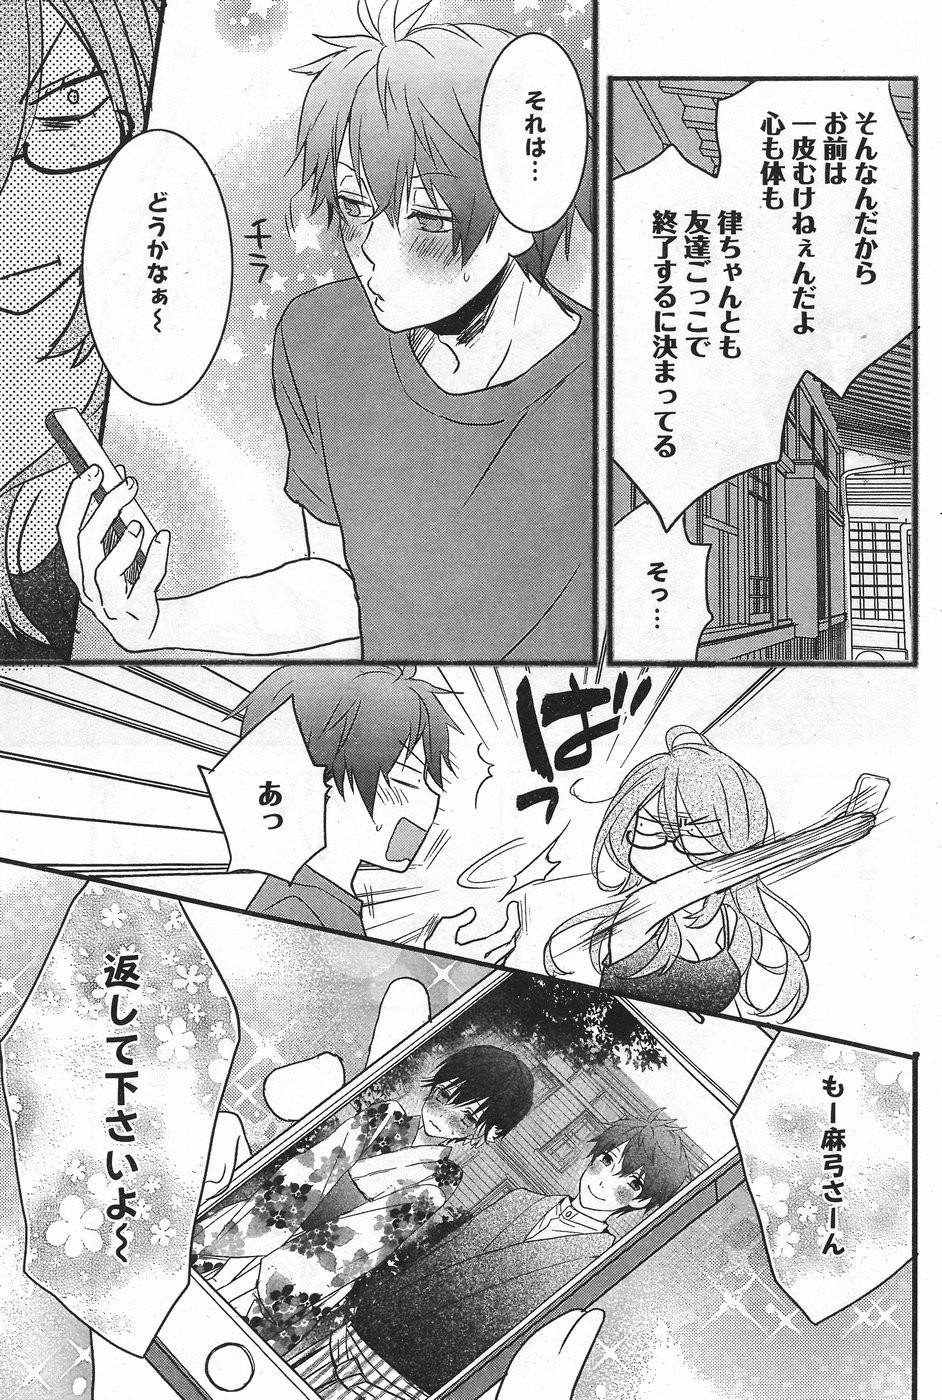 Bokura wa Minna Kawaisou - Chapter 71 - Page 3